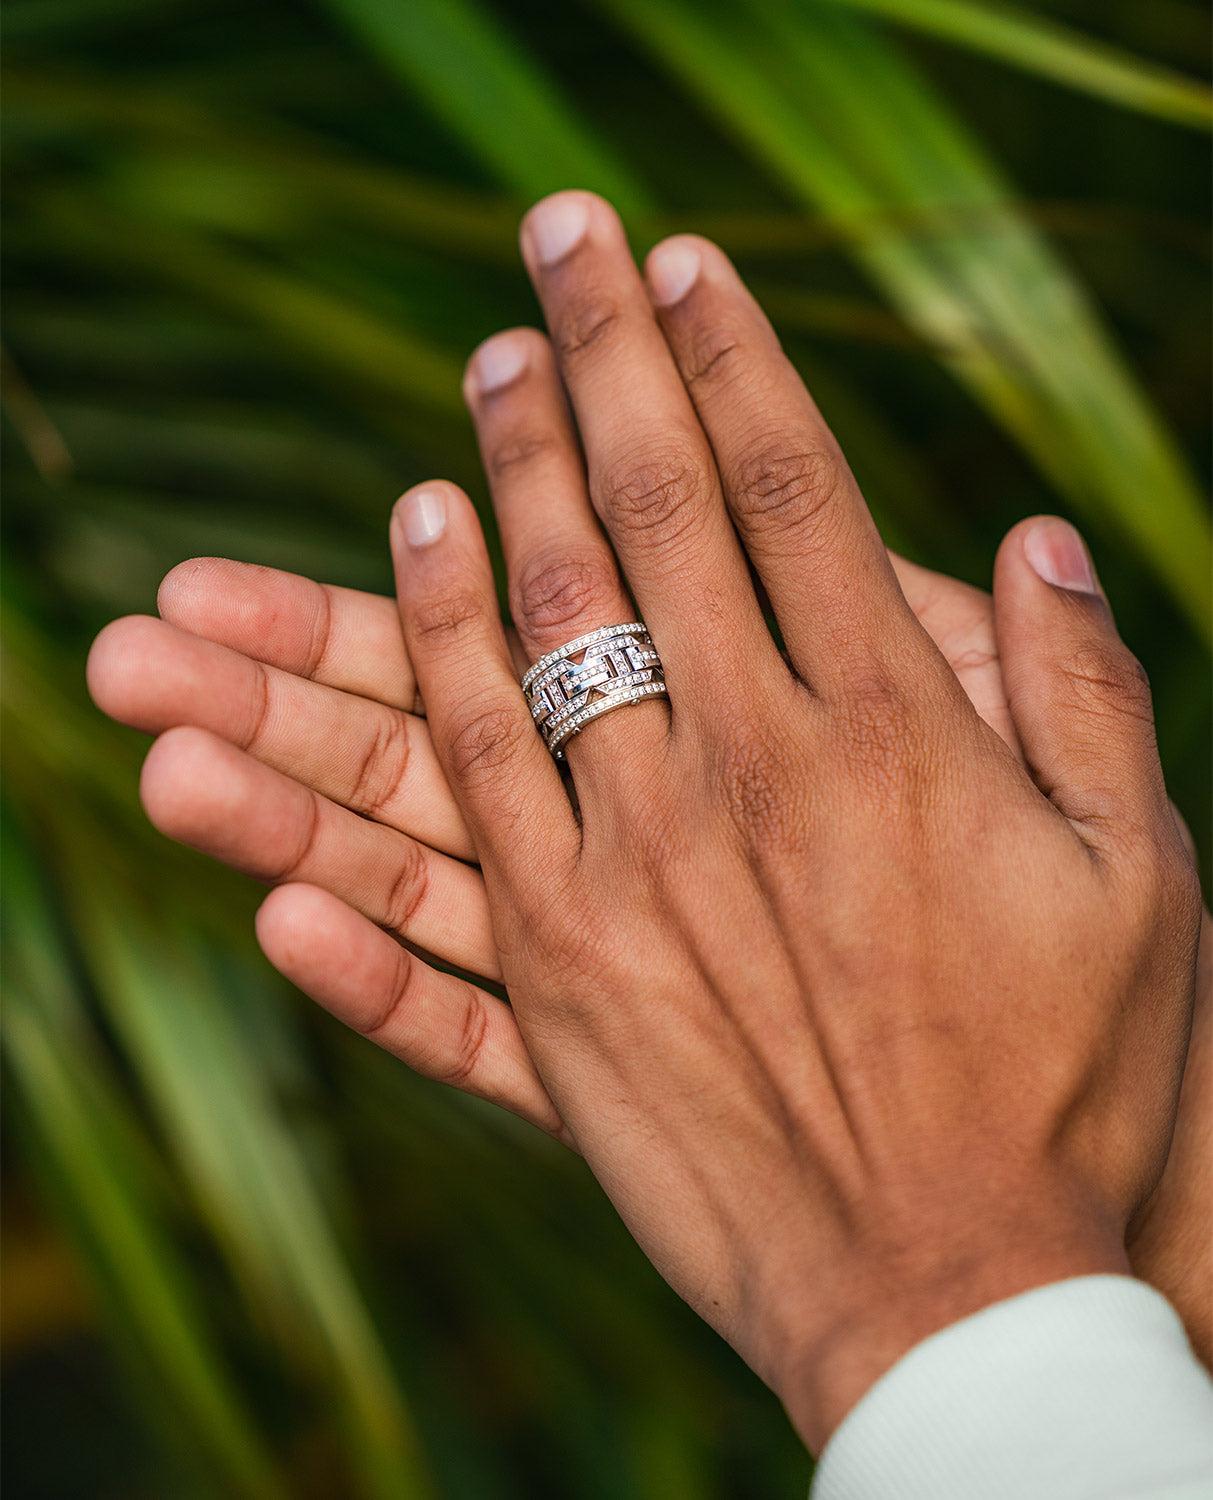 Ein wahrhaft einzigartiges Design und feine Verarbeitung sind in einem einzigartig auffälligen Ring mit 2.10ct runden weißen Diamanten im Brillantschliff in Pfannenform vereint. Das Briggs-Design ist ein außergewöhnlicher Statement-Ring für fast